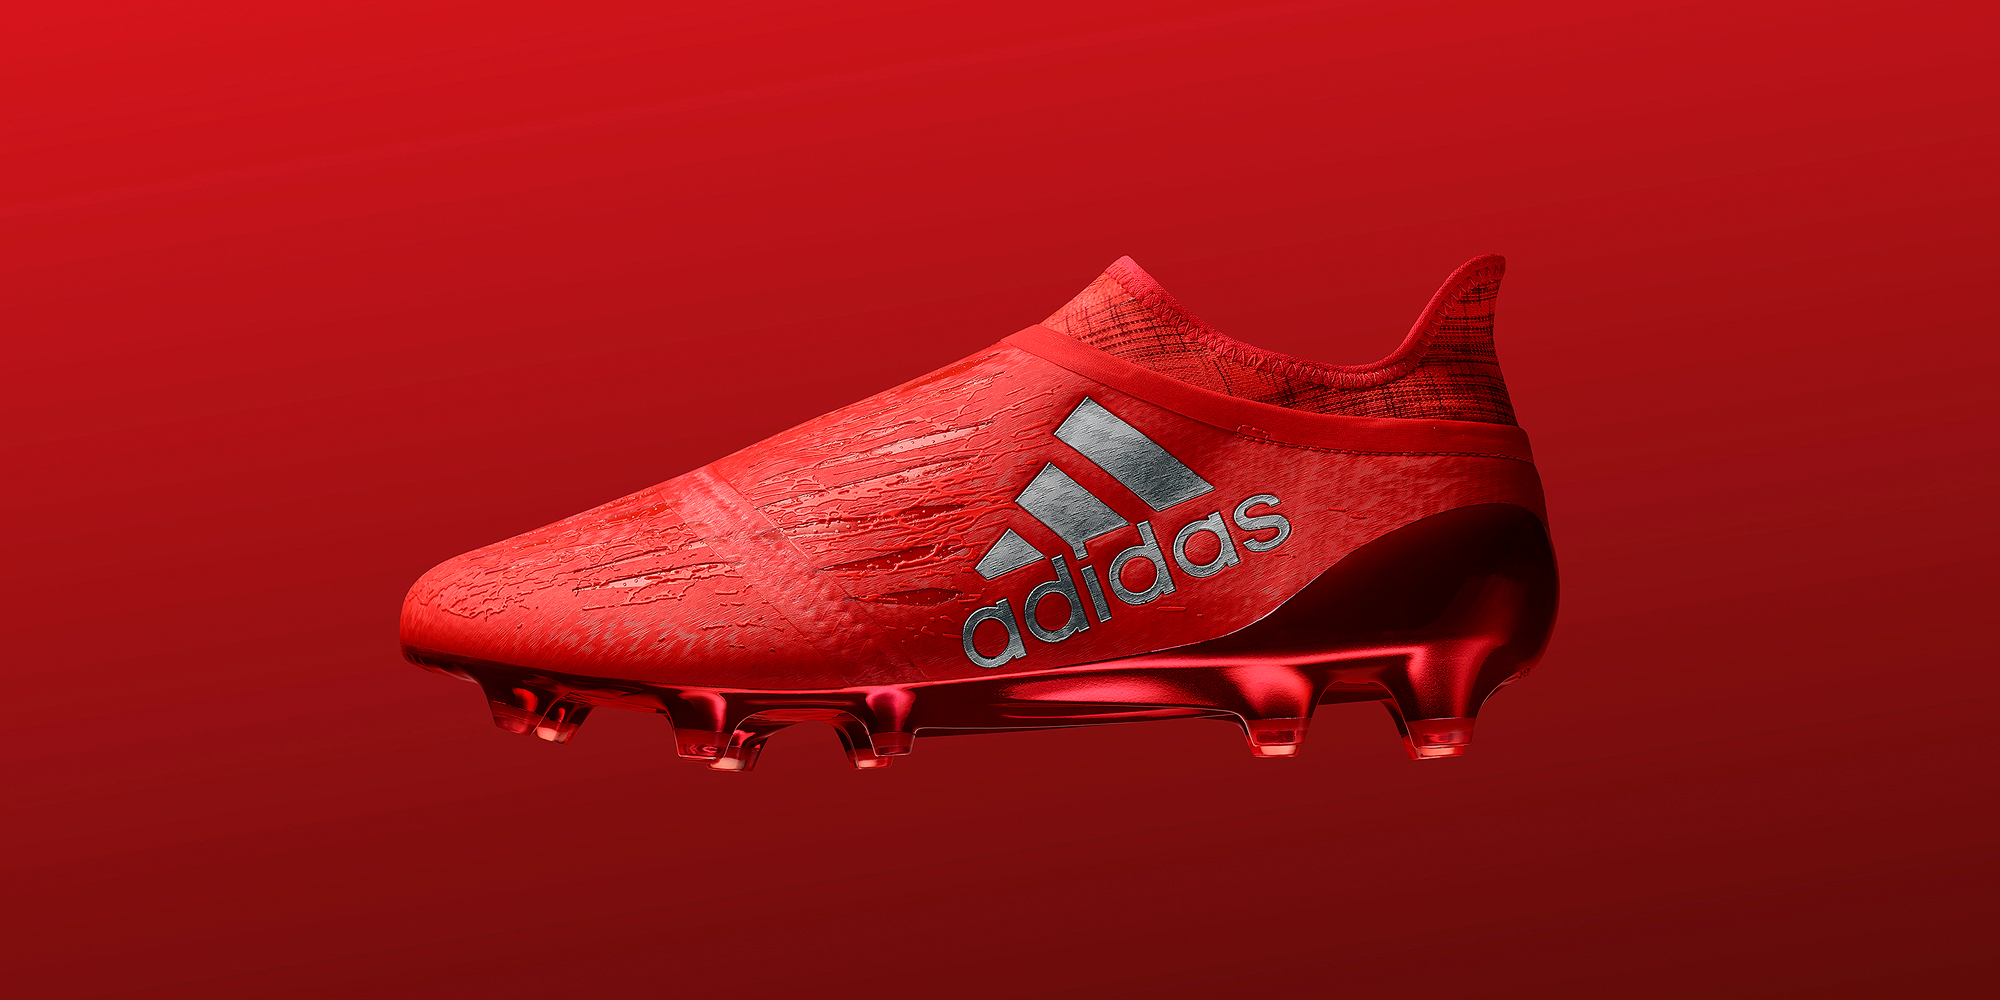 adidas Football dévoile les chaussures de sa nouvelle gamme Speed of Light, prévue pour la saison 2016/17